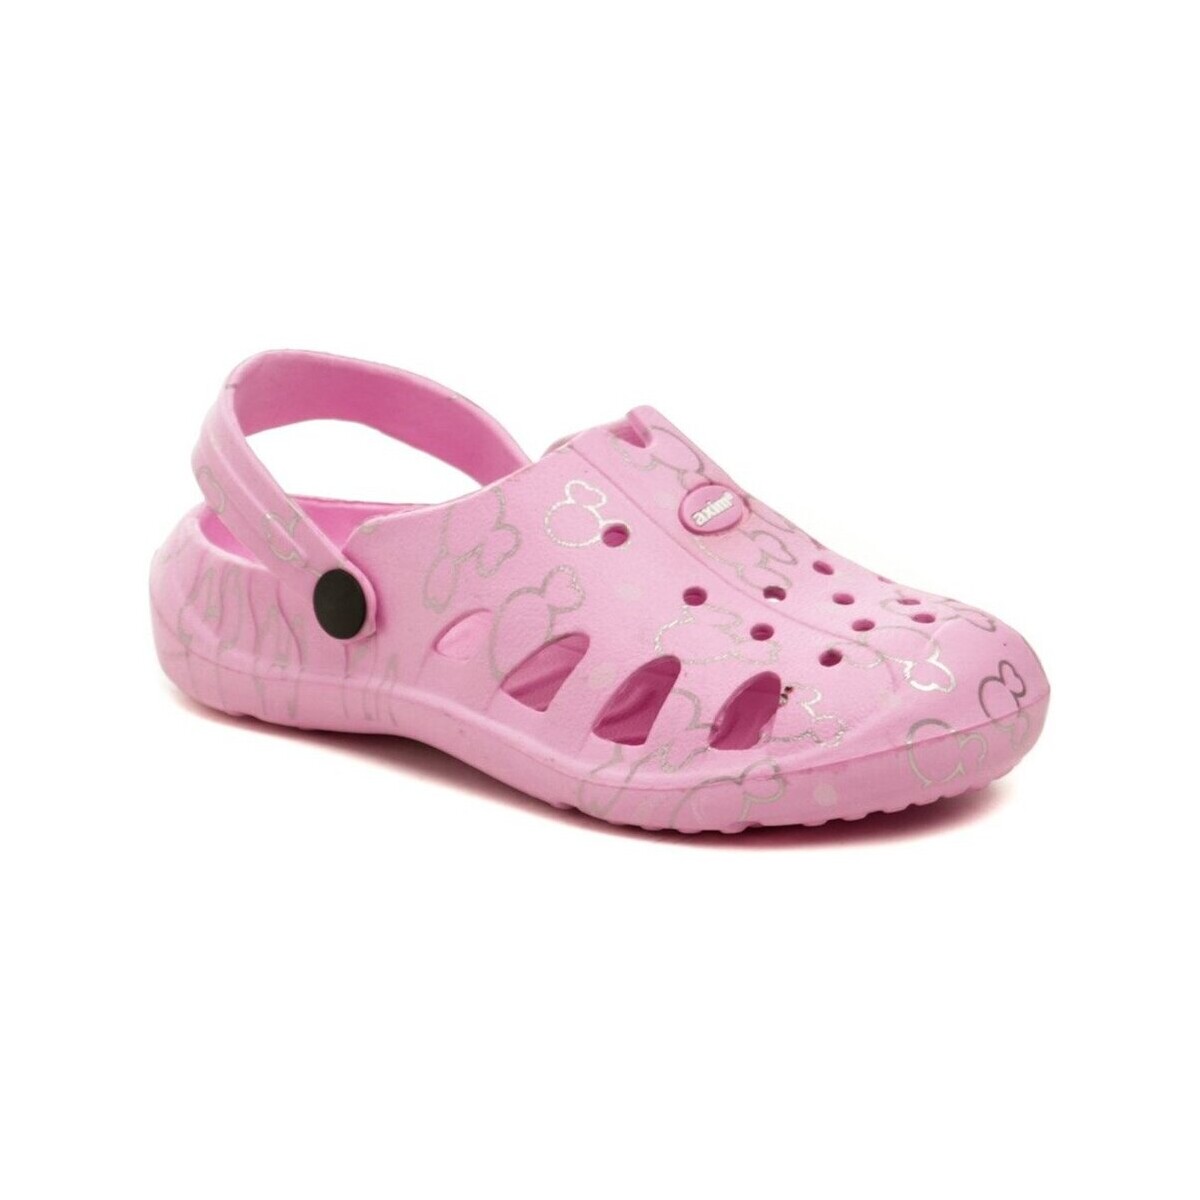 Boty Děti Pantofle Axim 1K23765 růžové dívčí nazouváky crocsy Růžová